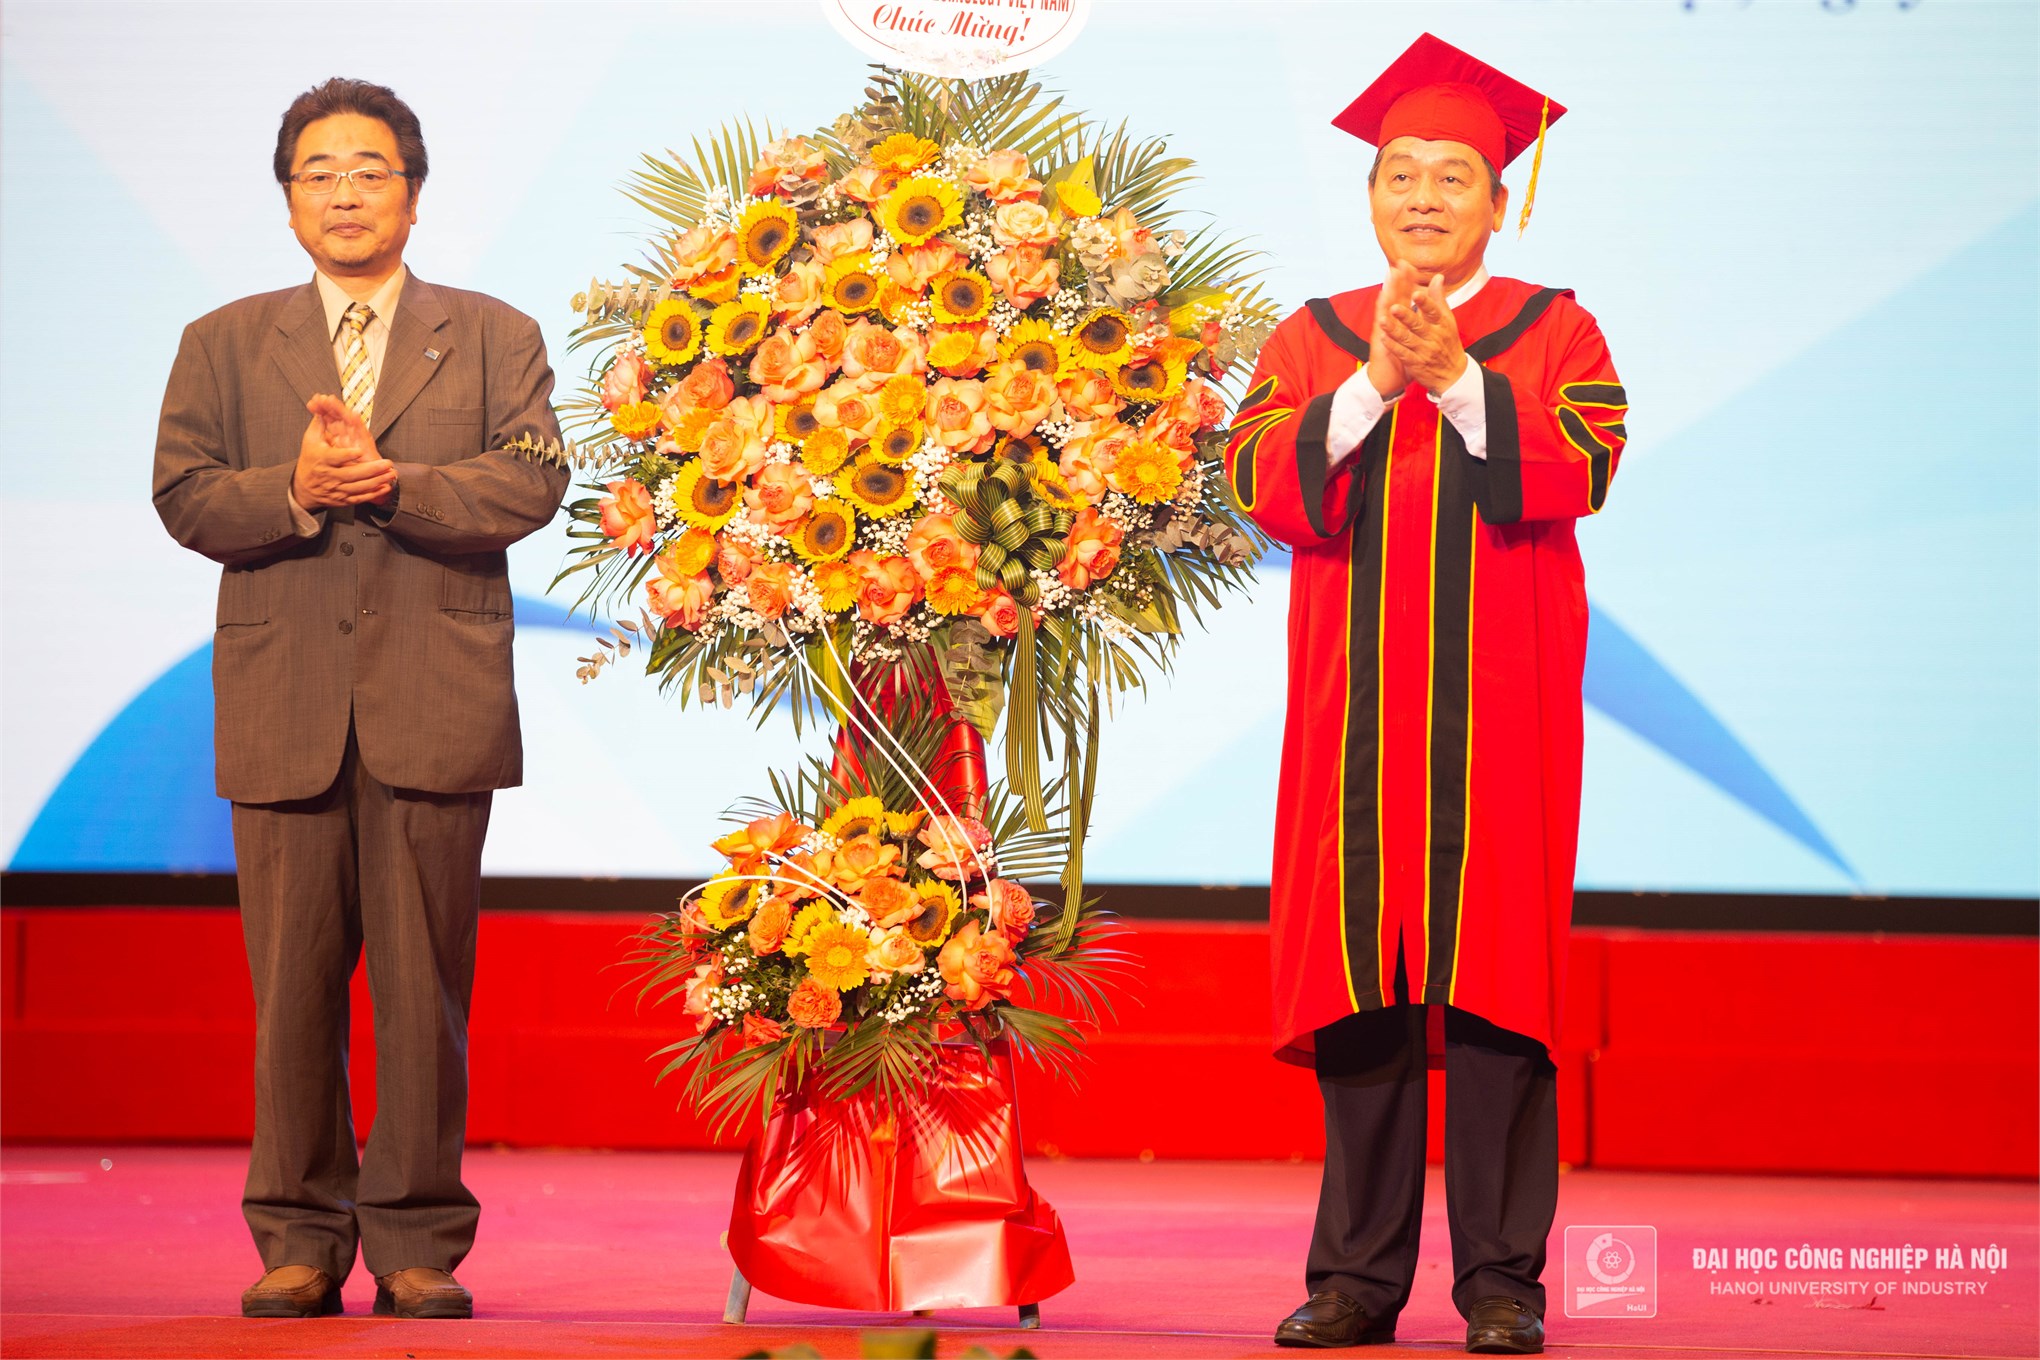 Hơn 5.000 sinh viên Đại học Công nghiệp Hà Nội tốt nghiệp năm 2022